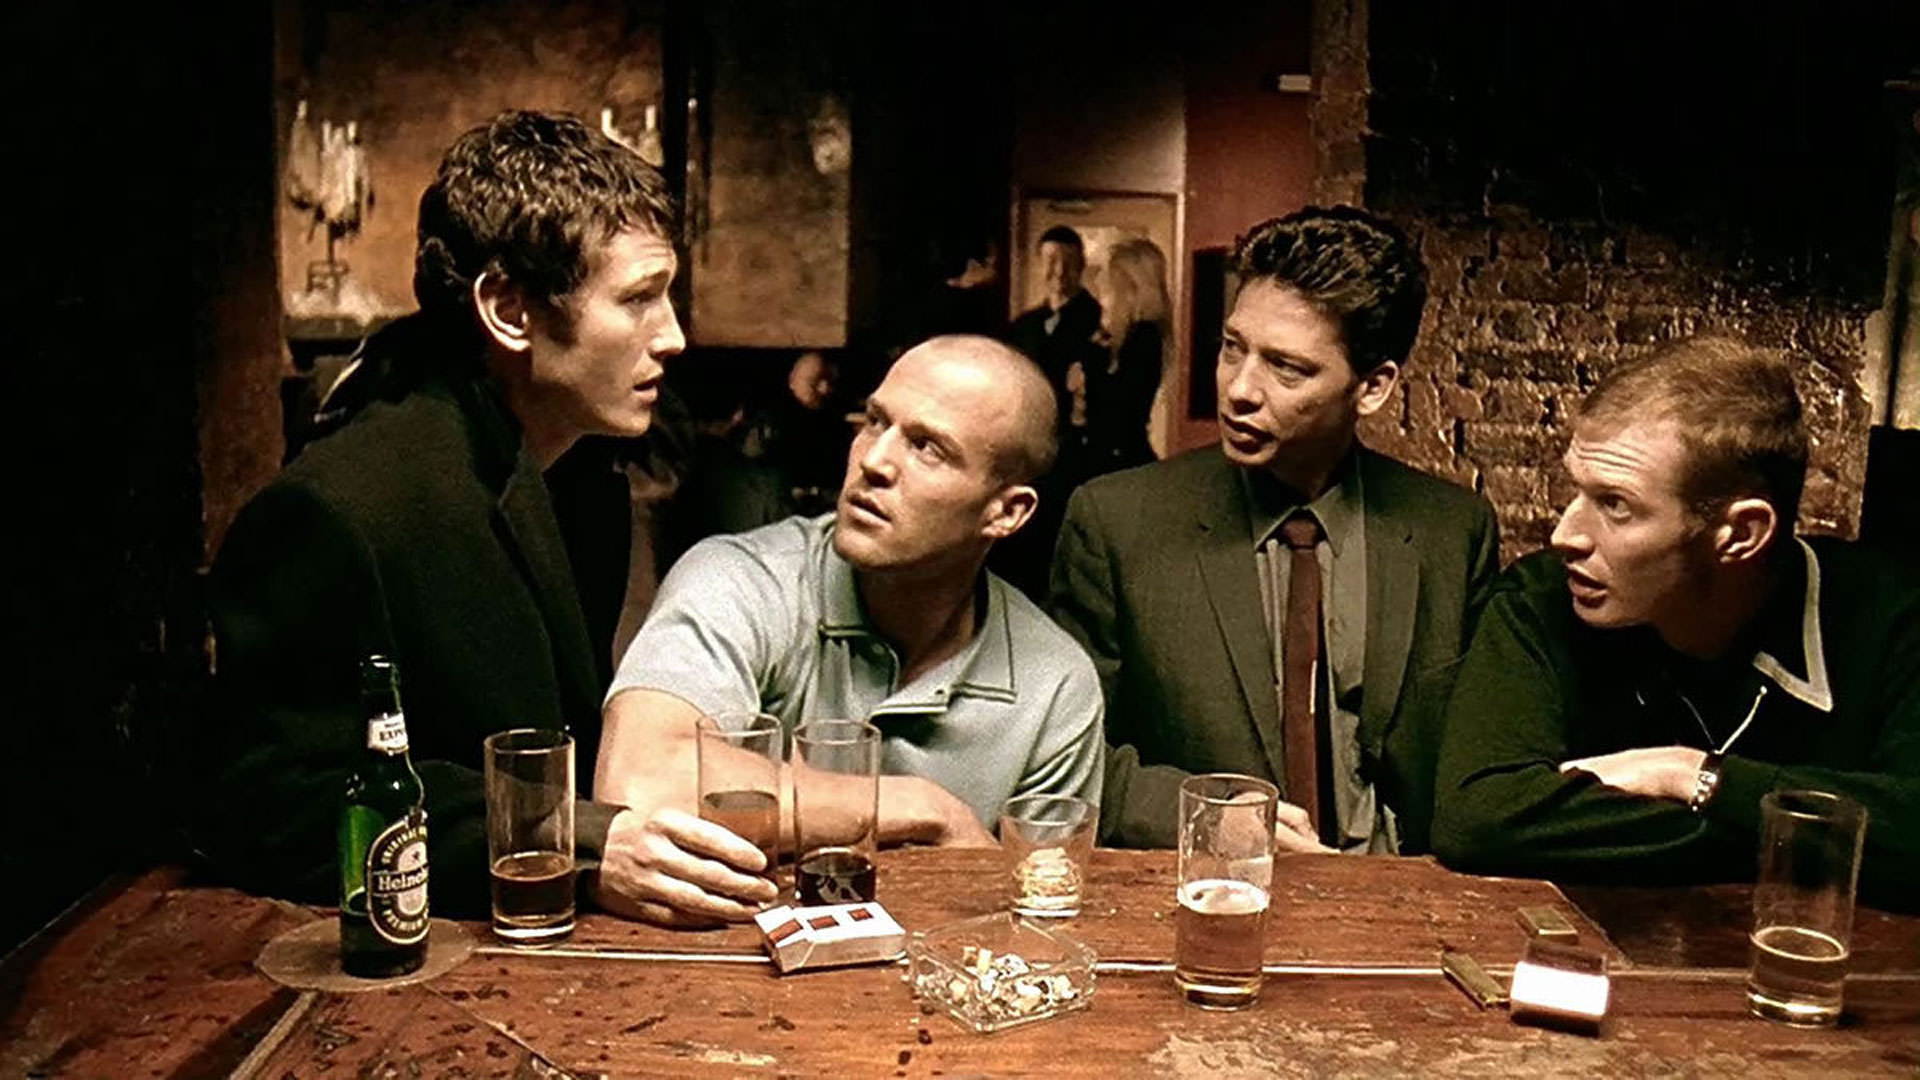 جیسون استاتهام و دکستر فلچر به همراه دو مرد دیگر نشسته داخل یک بار در نمایی از فیلم قفل انبار و دو بشکه باروت به کارگردانی گای ریچی